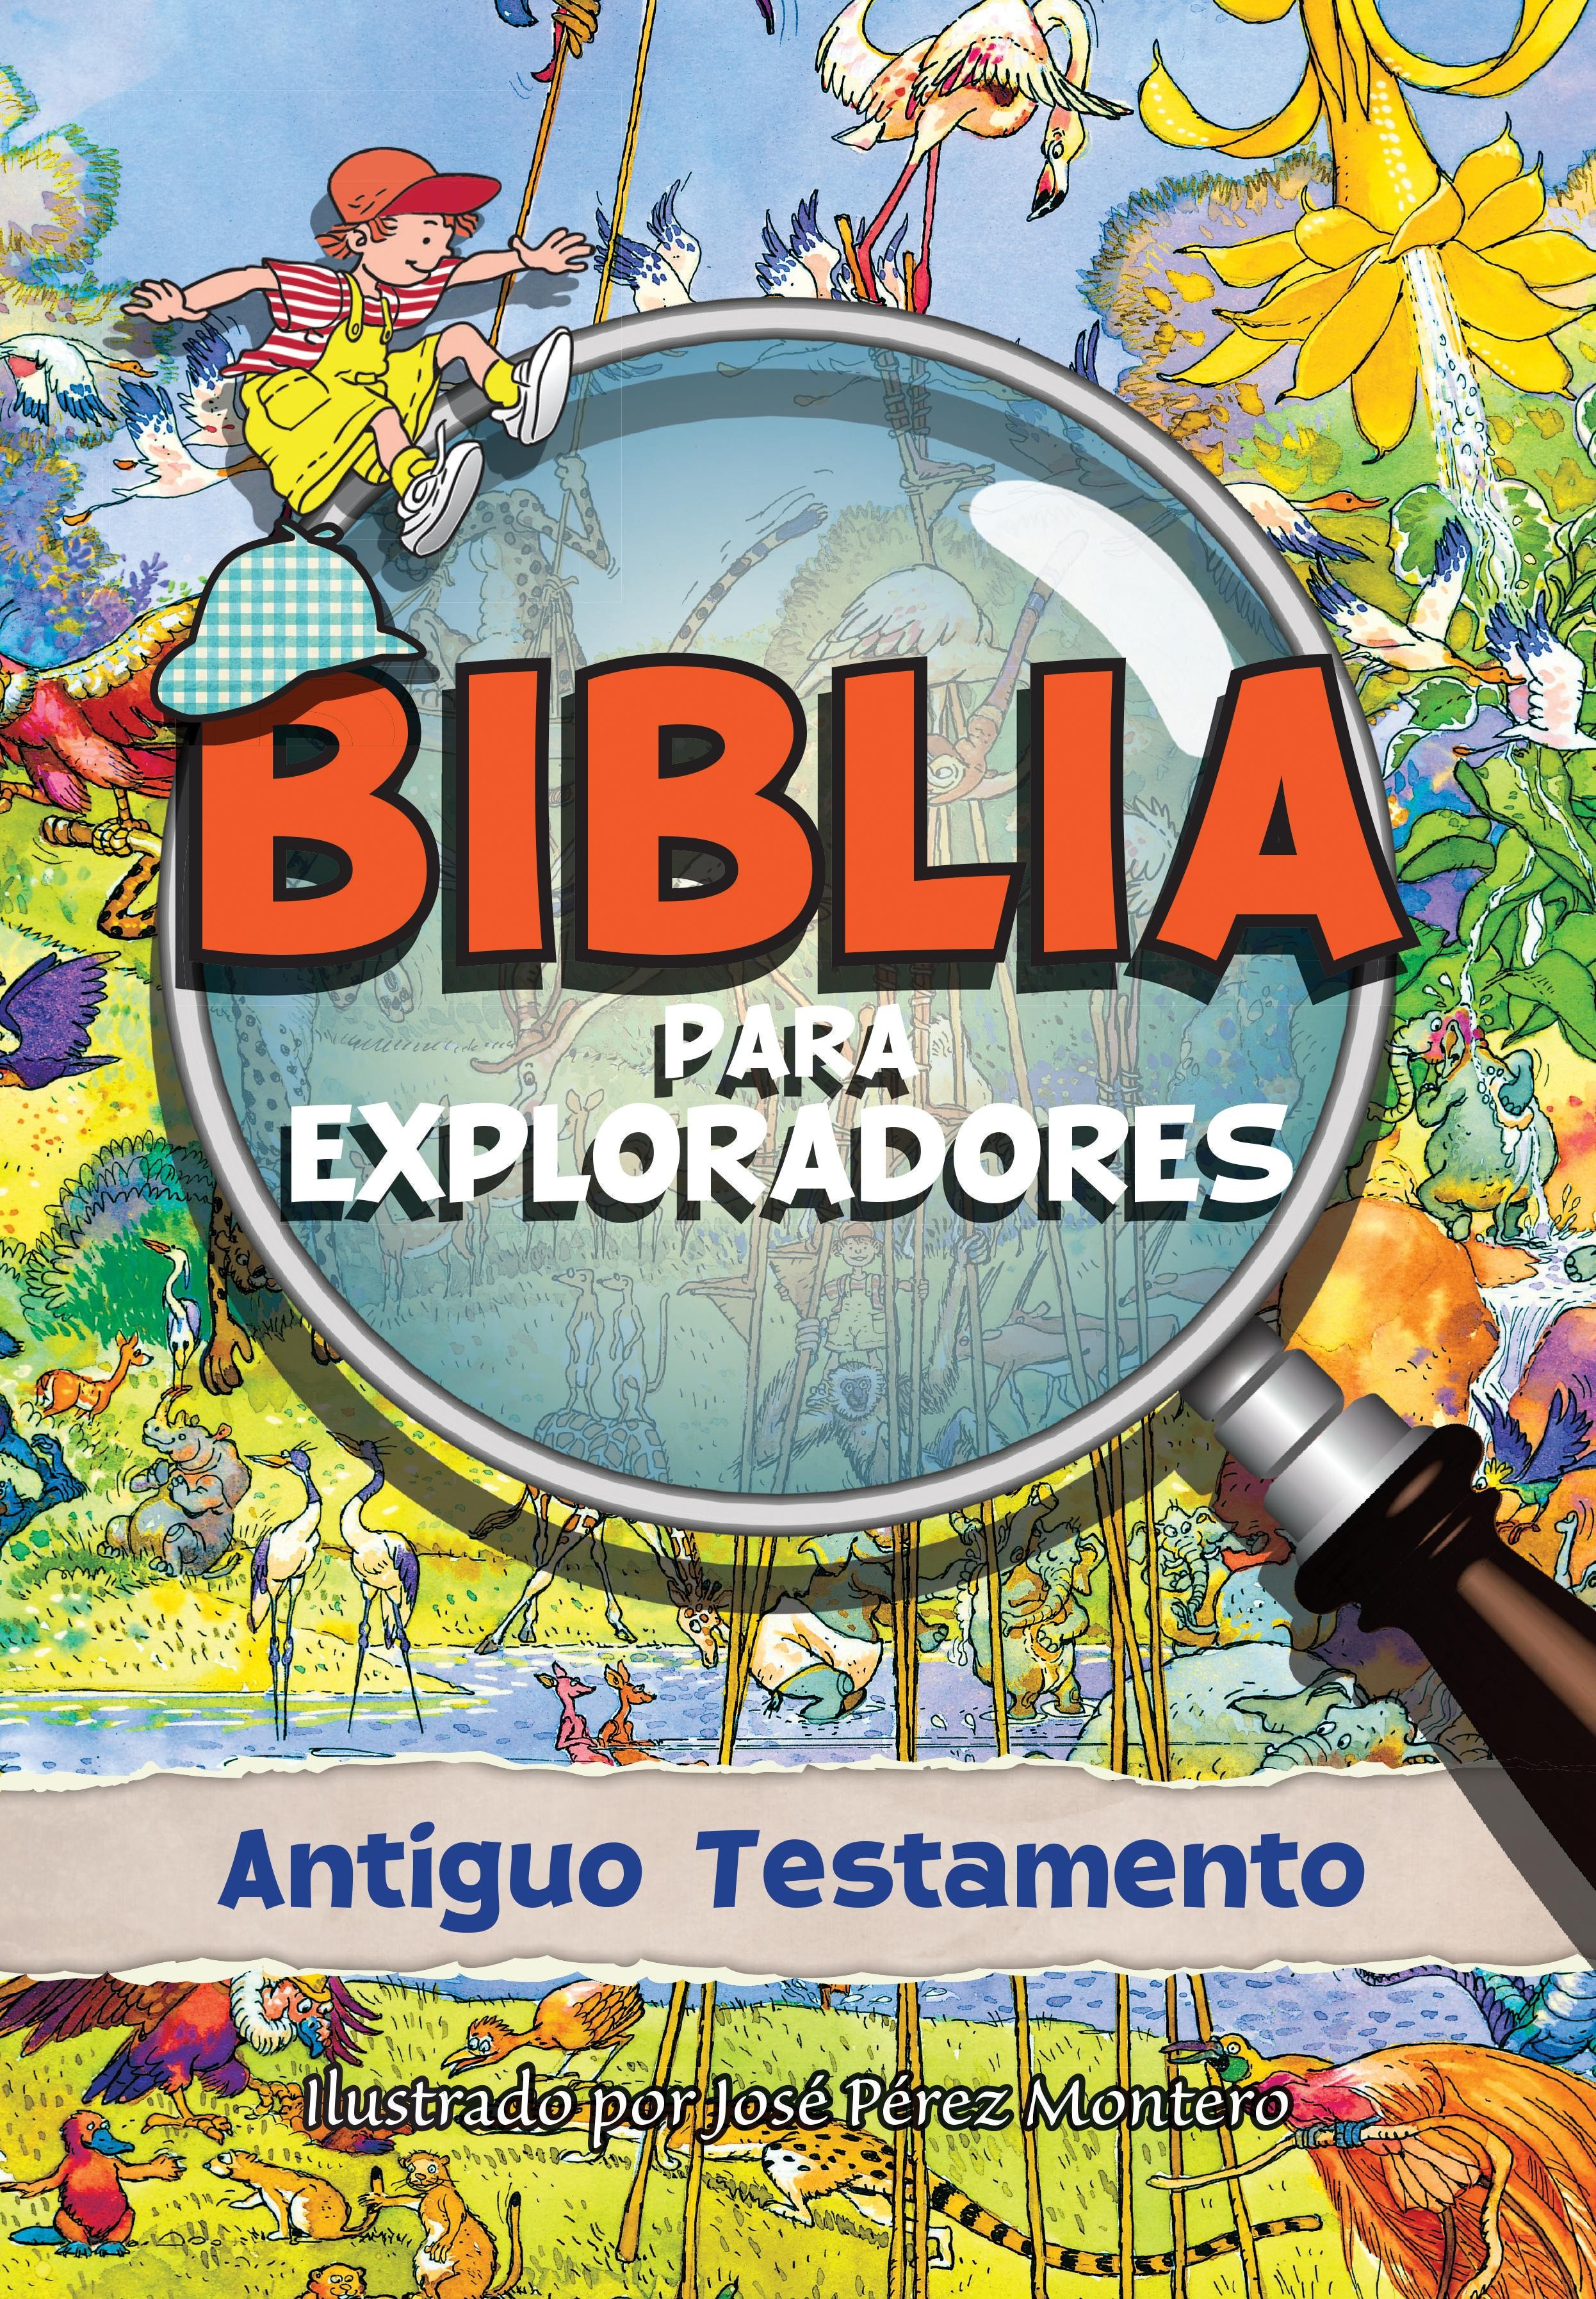  Biblia para exploradores: Antiguo Testamento